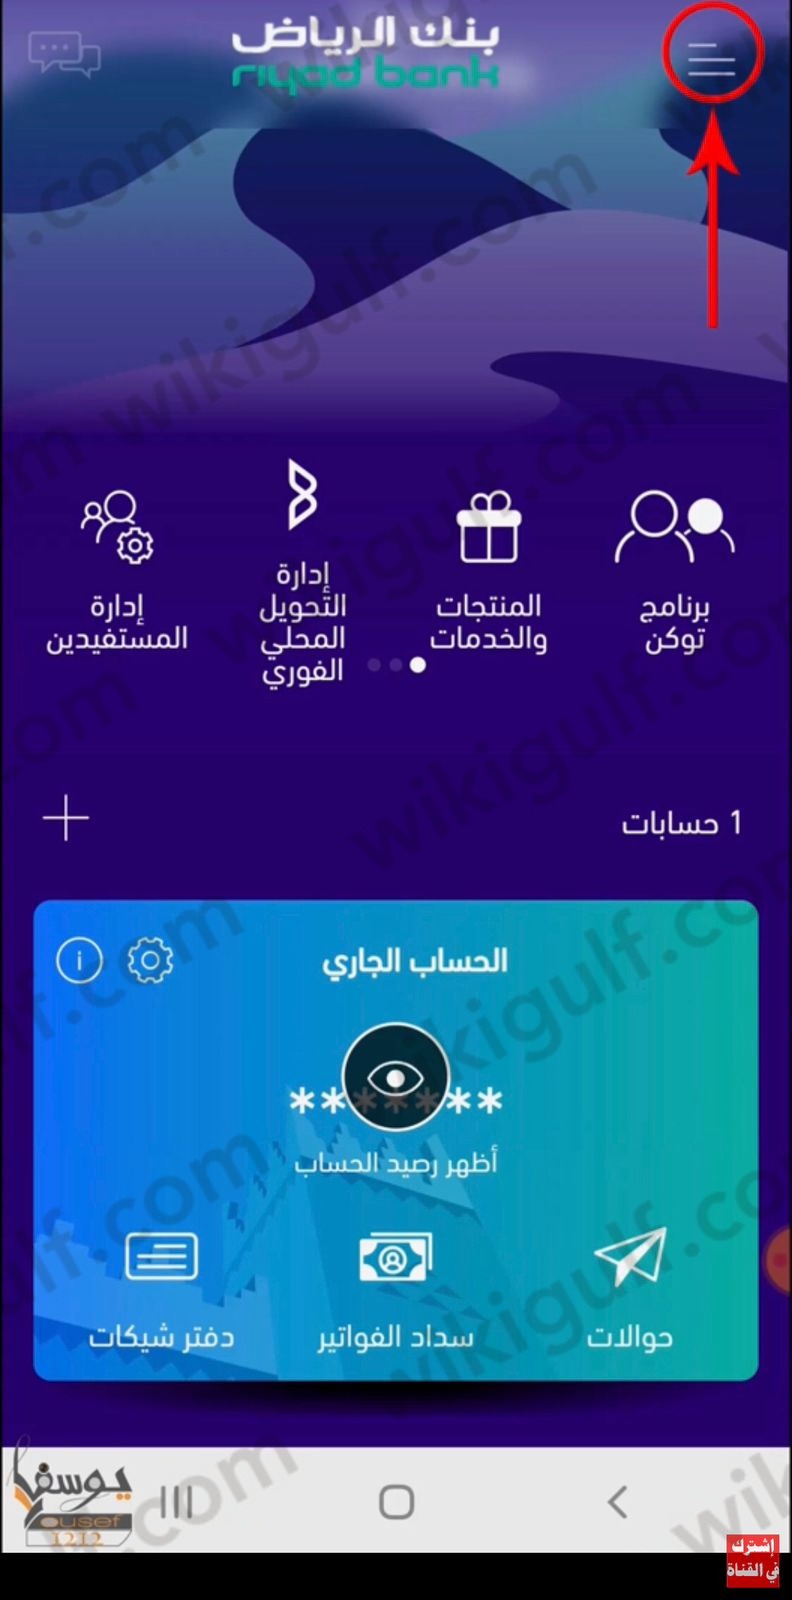 الاكتتاب في بنك الرياض باستخدام التطبيق